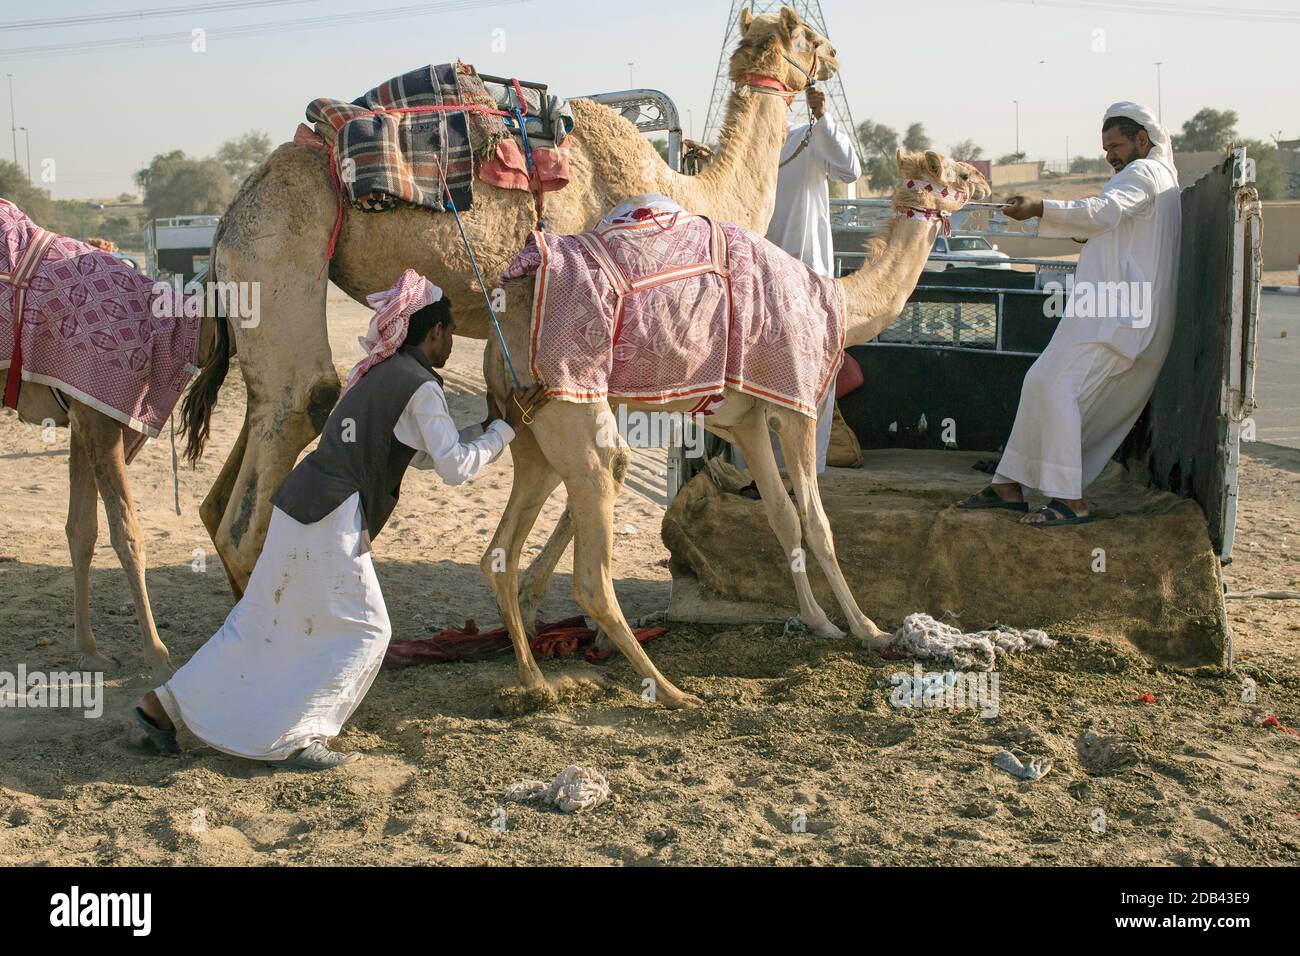 Vereinigte Arabische Emirate / Al Dhaid / Camel RAC in der zentralen Region des Emirats Sharjah in den Vereinigten Arabischen Emiraten / Stockfoto